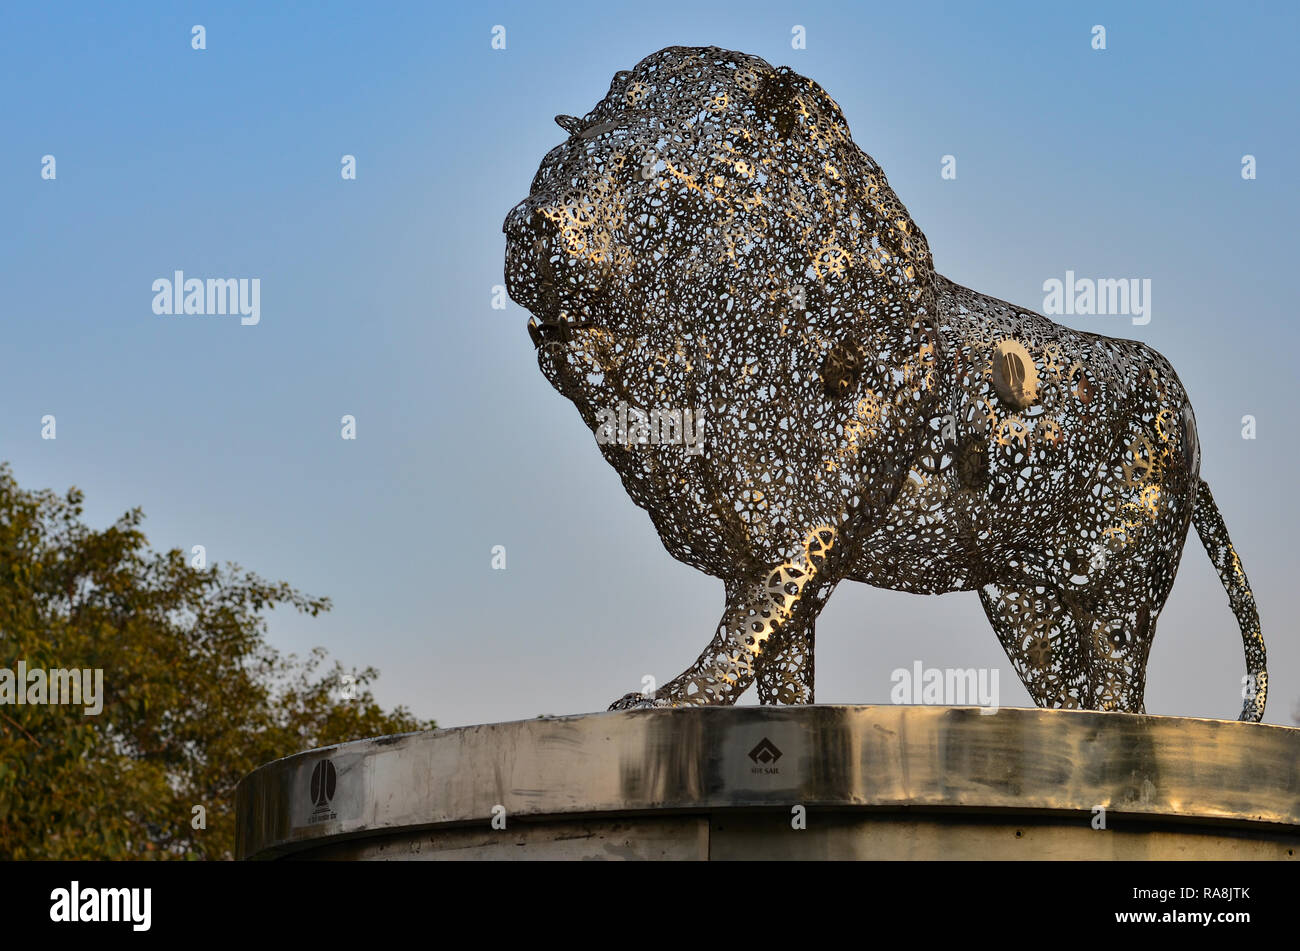 Symbole de faire mouvement en Inde, le Lion fait d'acier à Connaught Place. Circulation d'encourager les sociétés à fabriquer leurs produits en Inde Banque D'Images